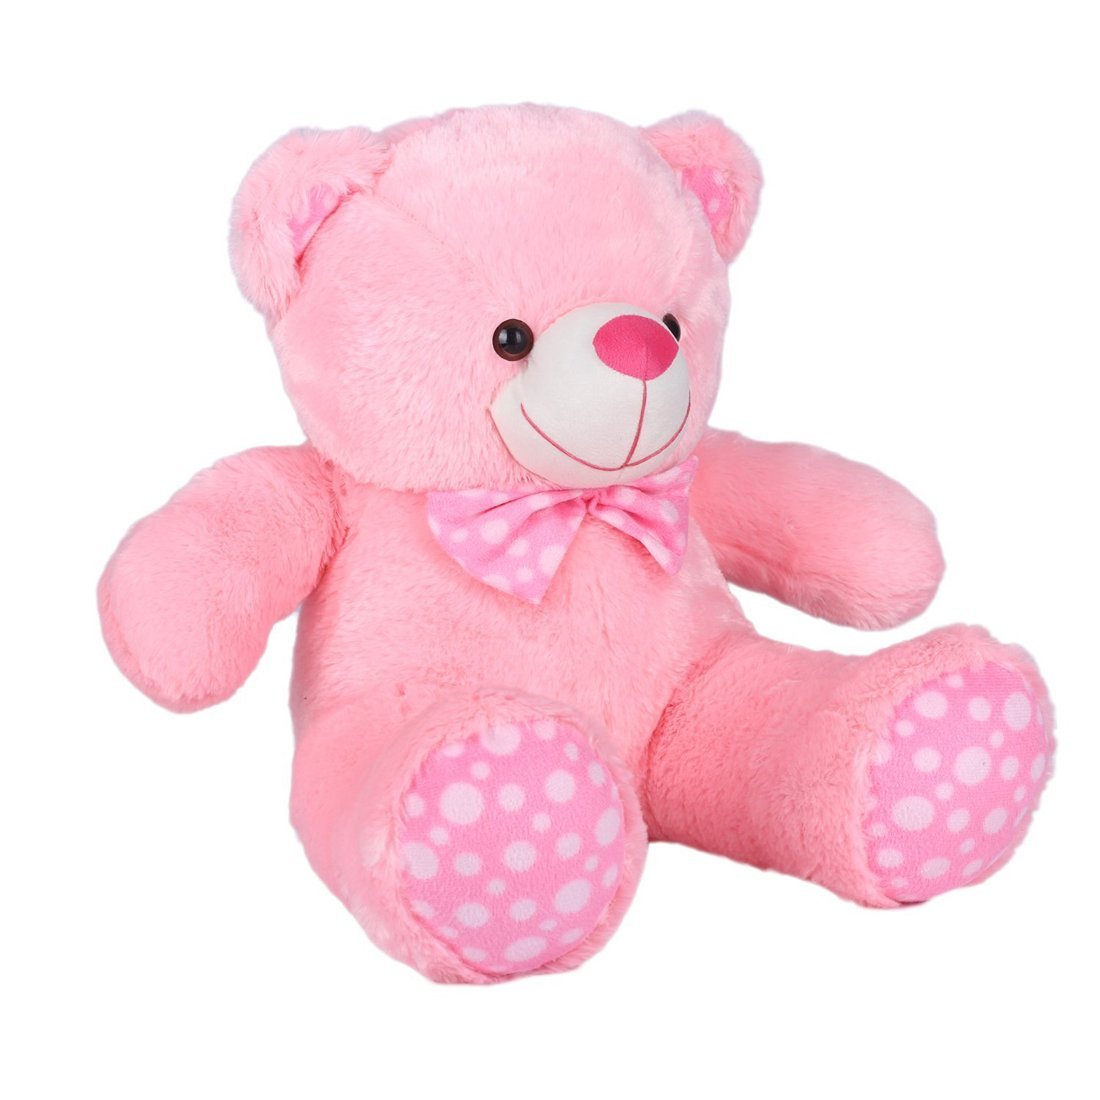 Розовый мишка игрушка. Teddy Toy розовый. Born Pink игрушки. Розовая игрушка для женщин.